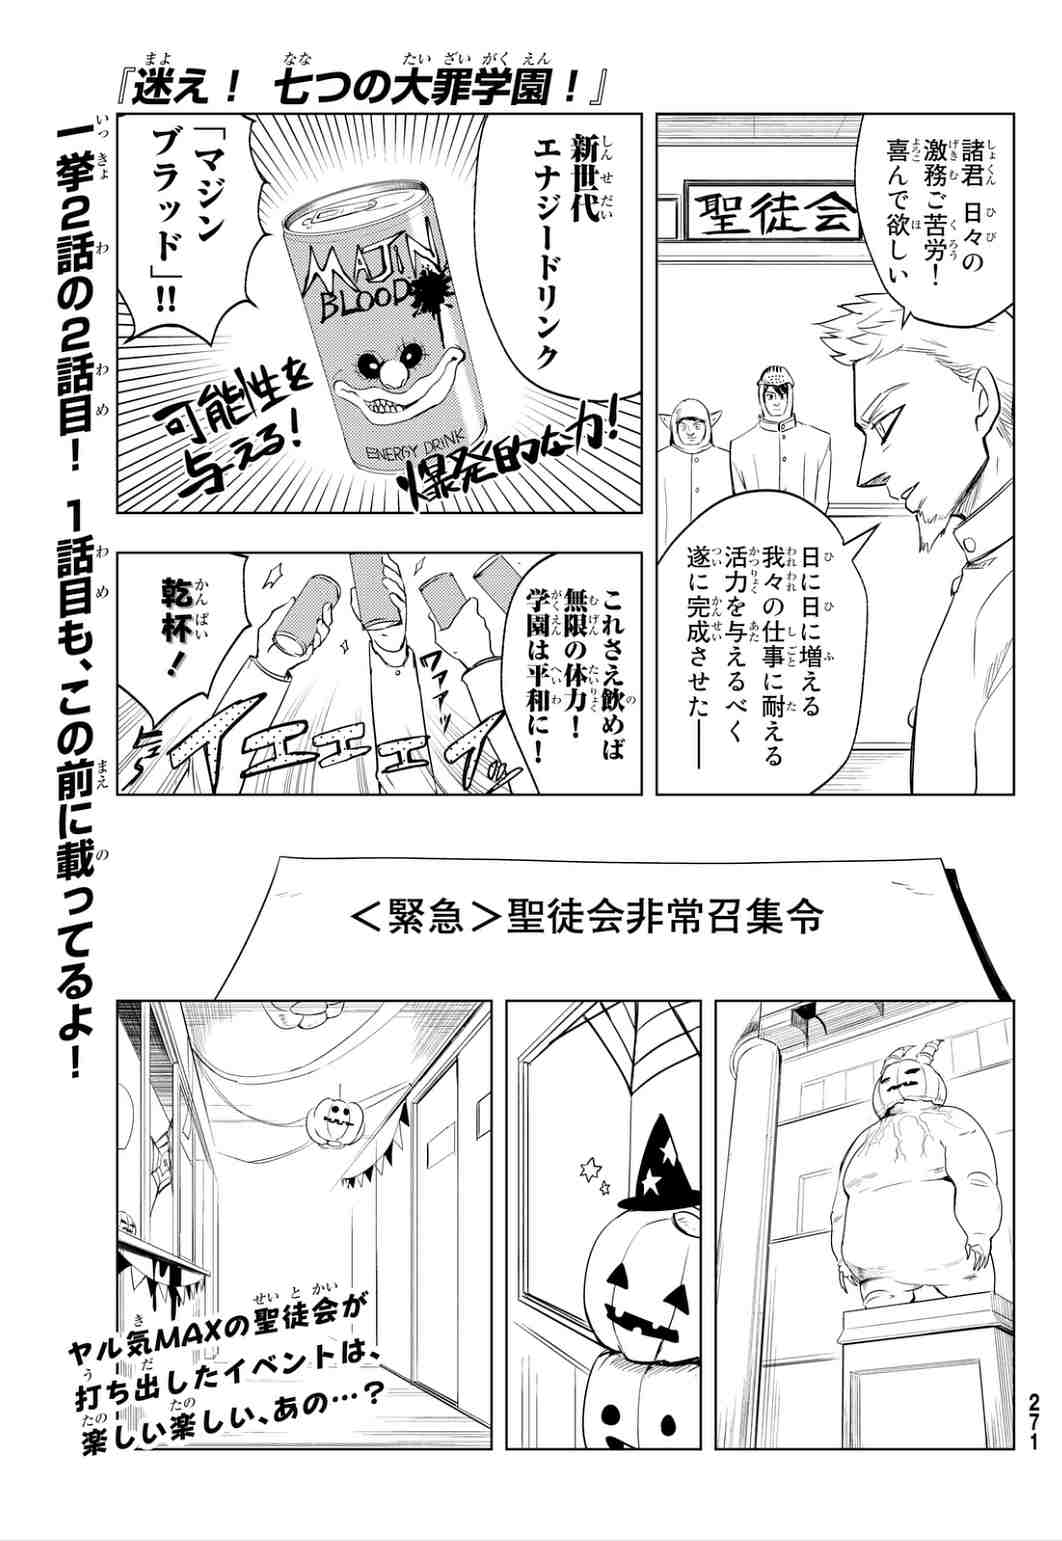 迷え 七つの大罪学園 9話 Manga Townまんがタウン まんがまとめ 無料コミック漫画 ネタバレ